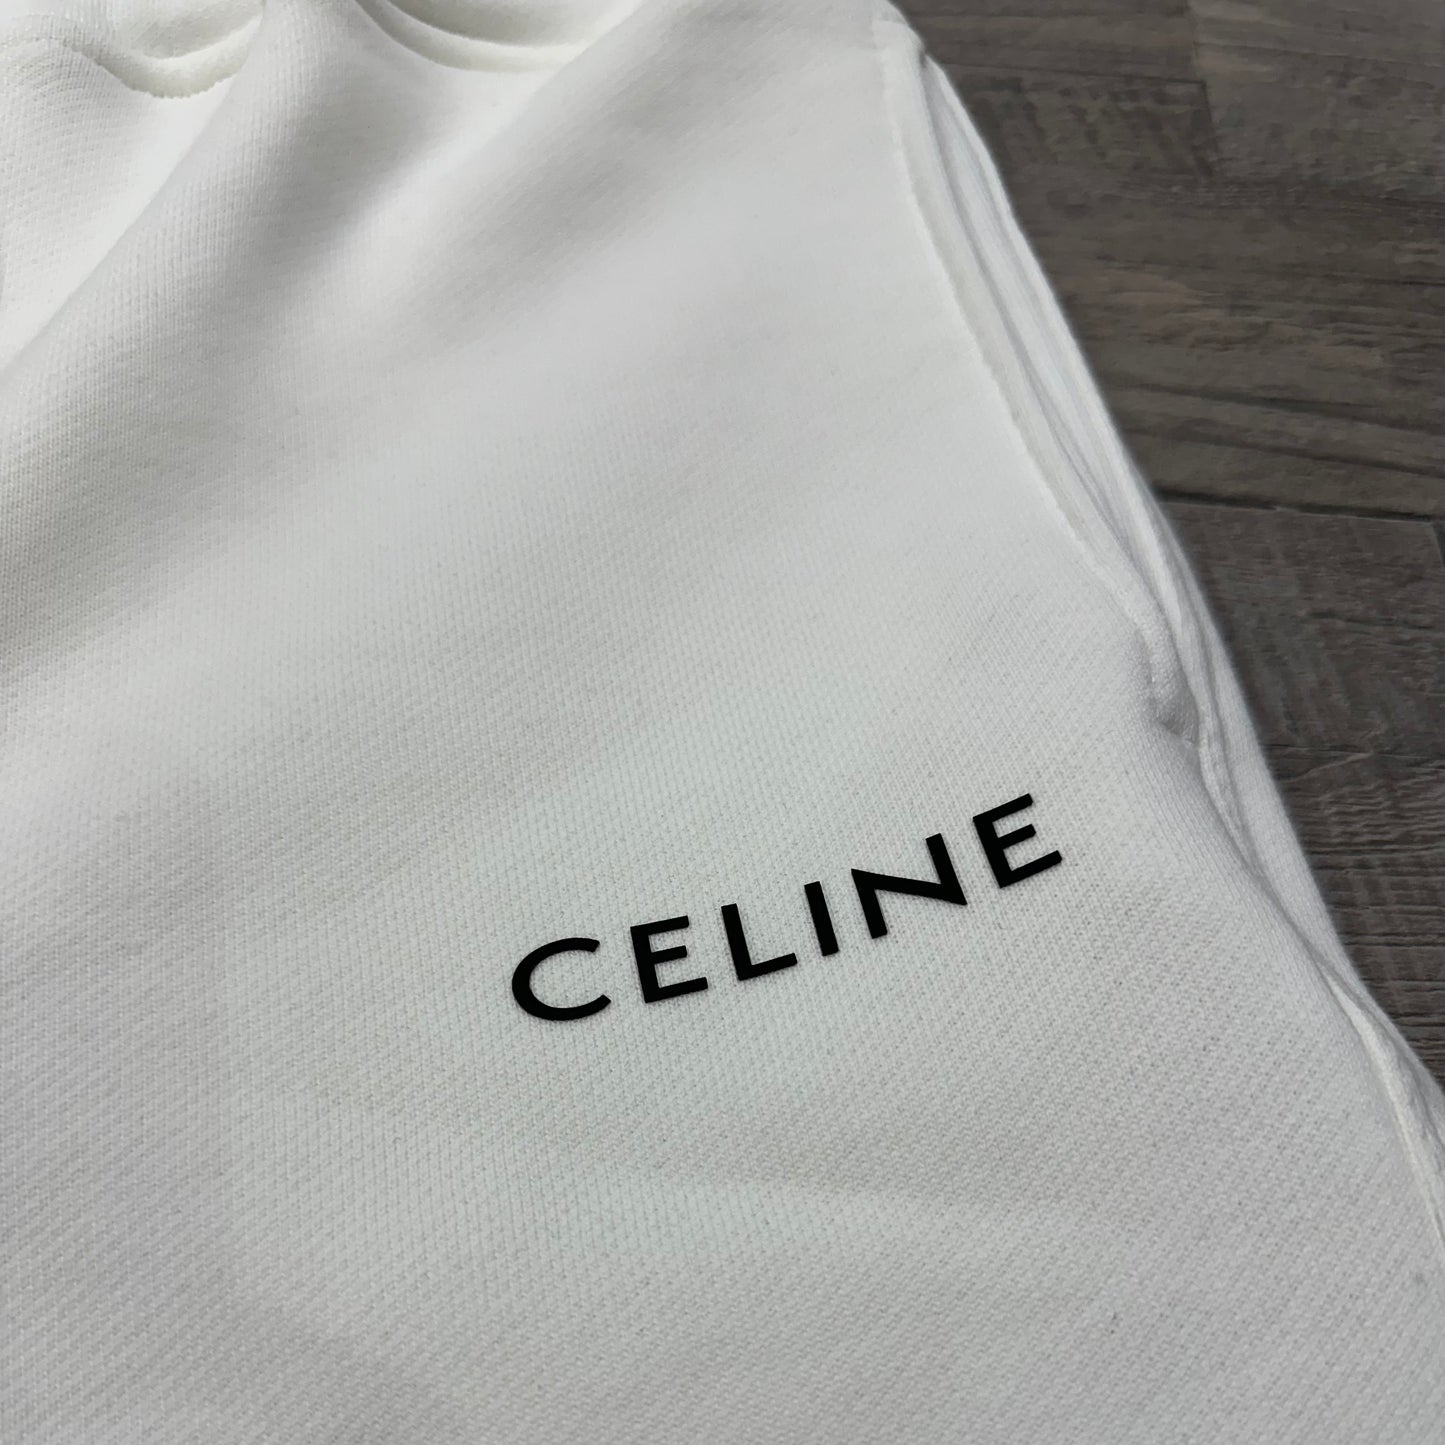 Celine Short White 3-A